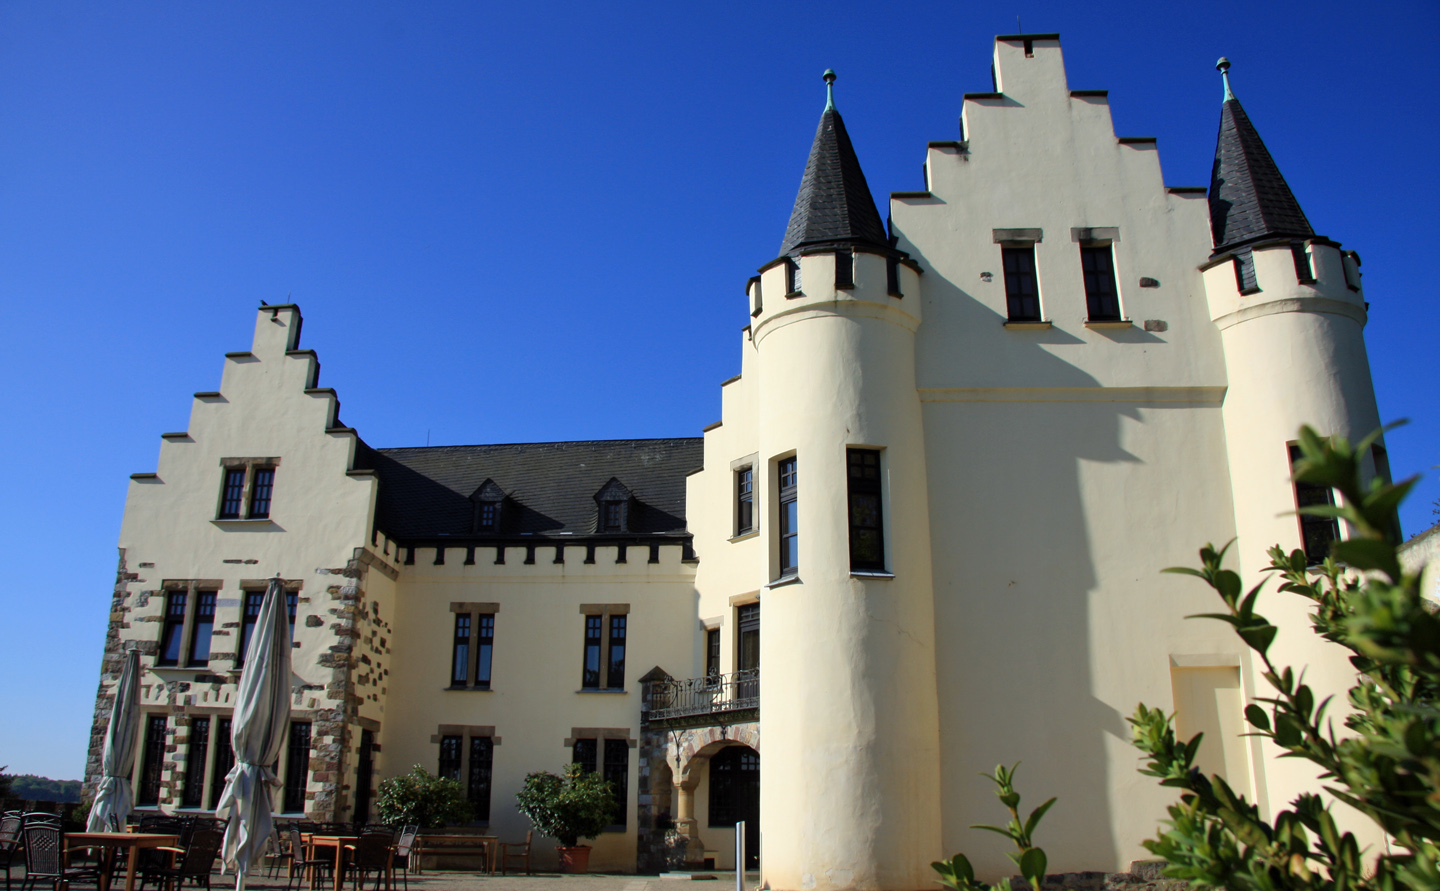 Burg Rode in Herzogenrath